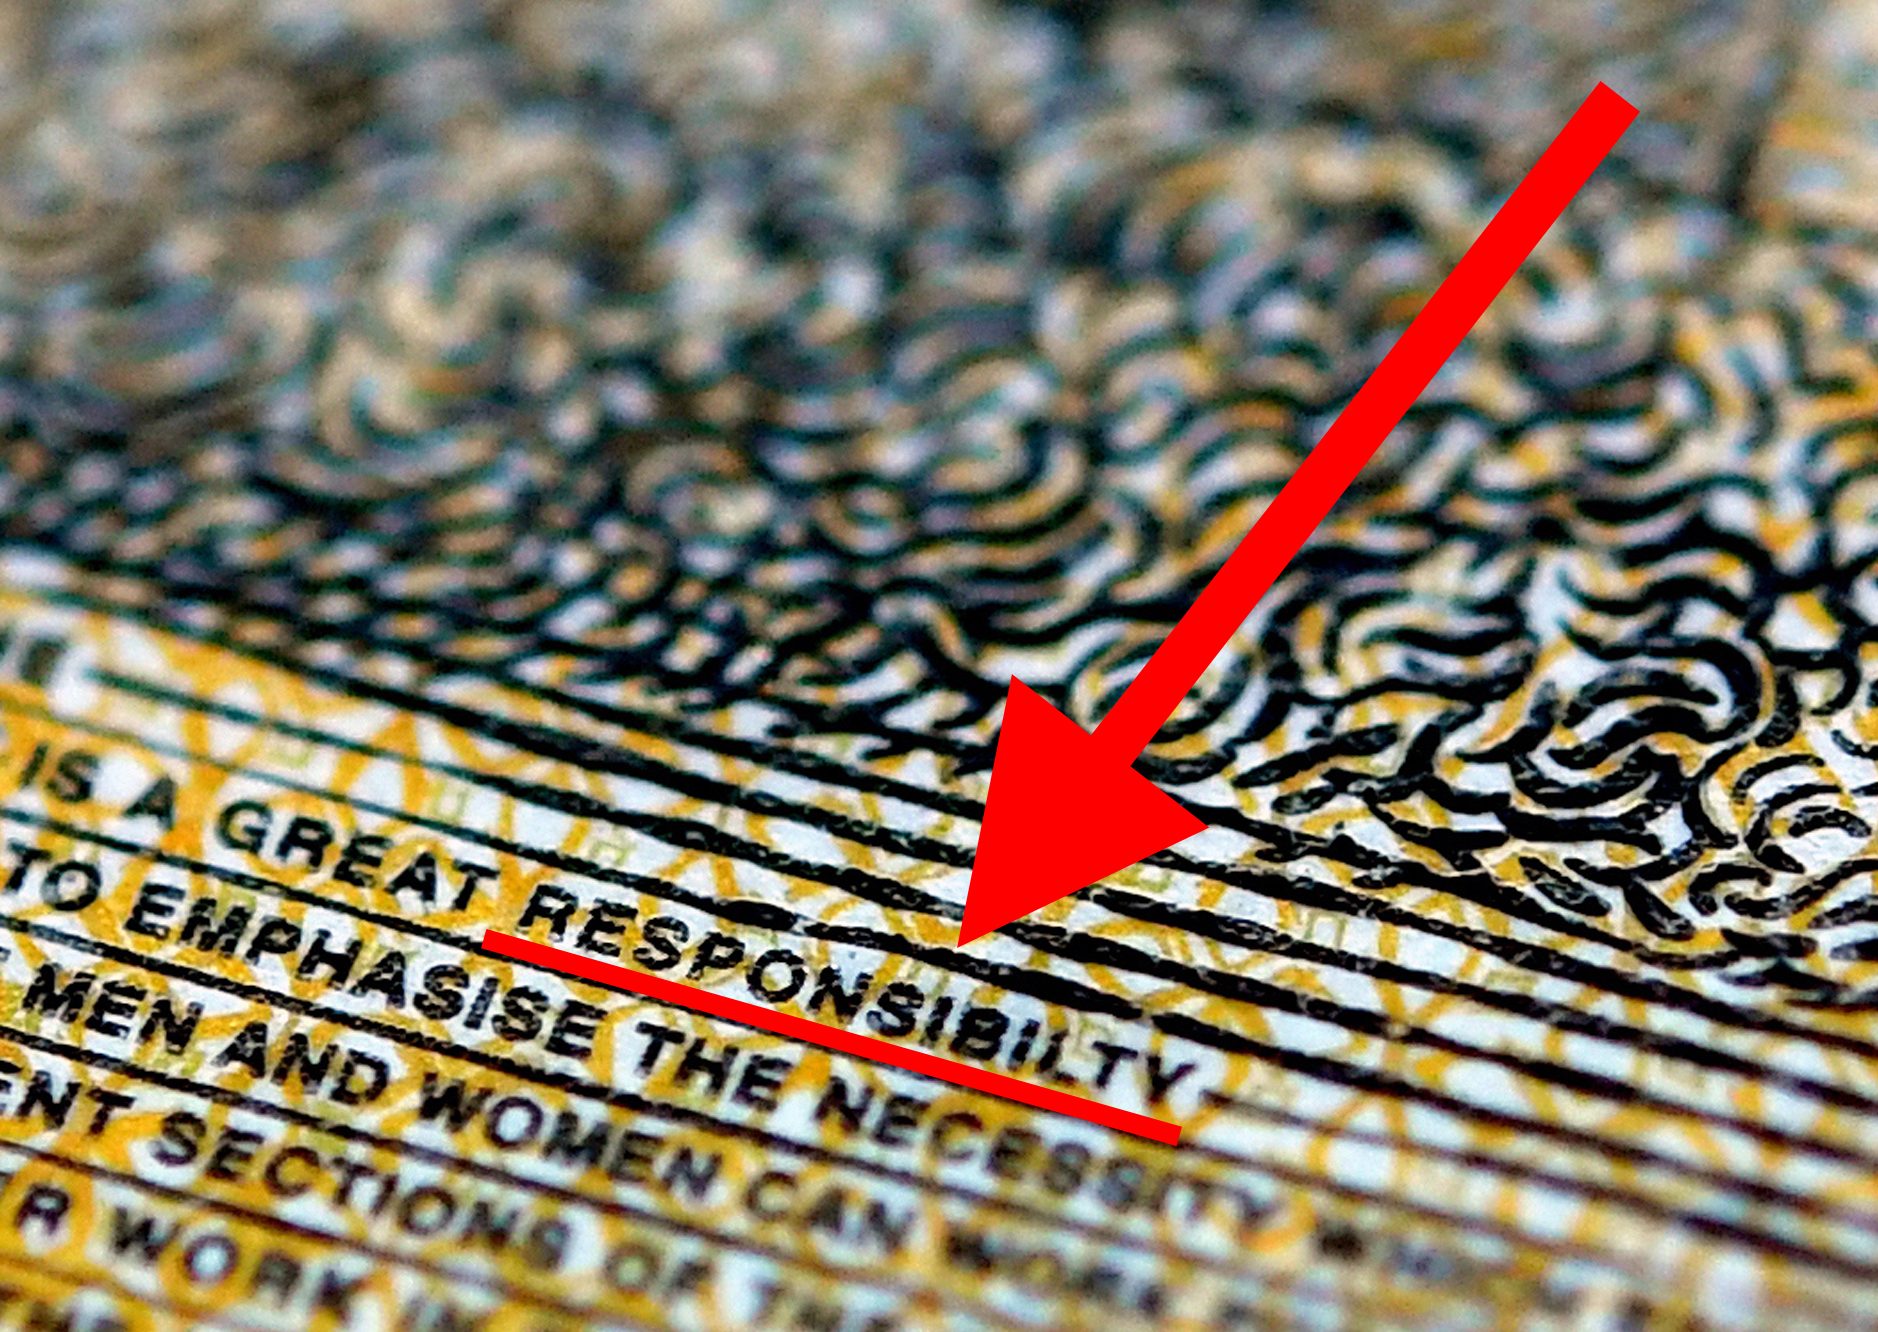 Op het nieuwe Australische briefje van 50 dollar staat het woord 'responsibility' (verantwoordelijkheid) gespeld als 'responsibilty'.